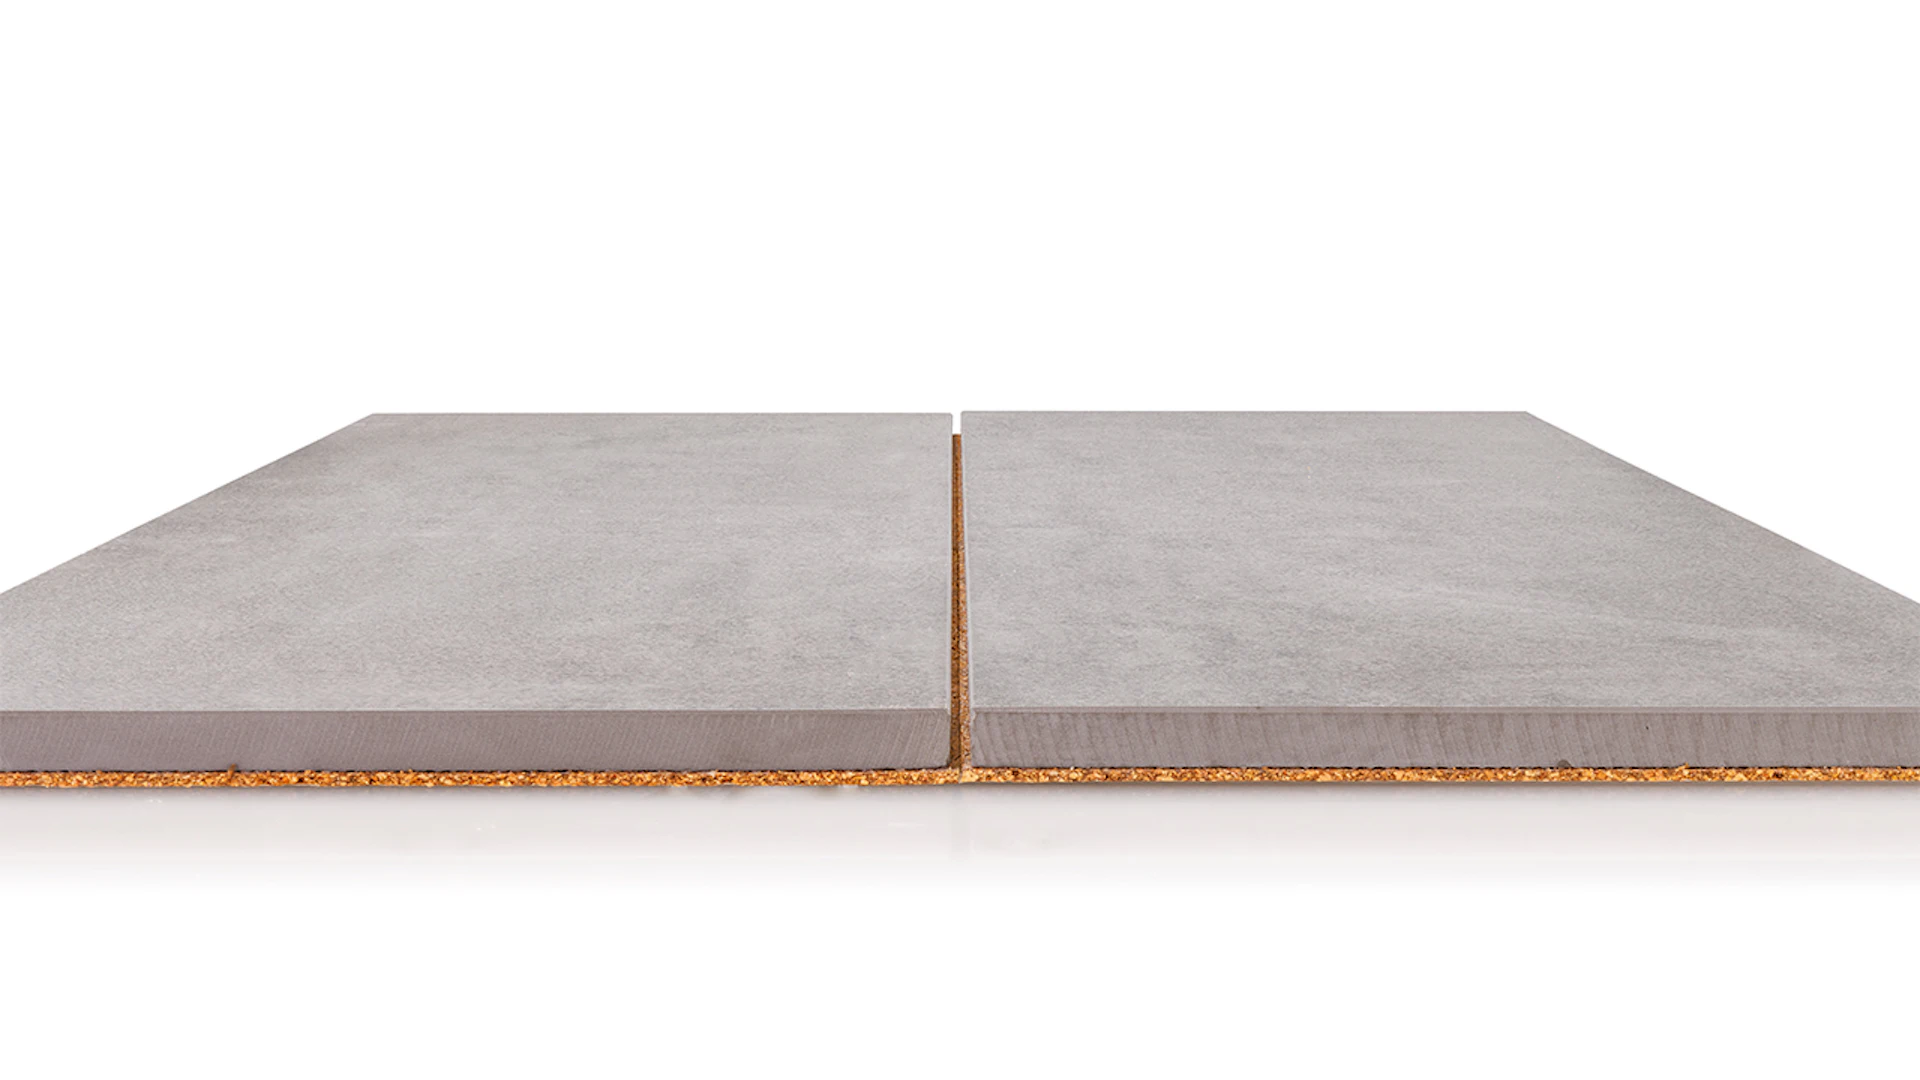 planeo DIYtile floor tiles concrete - 30 x 60 x 12.5 cm Brown PT